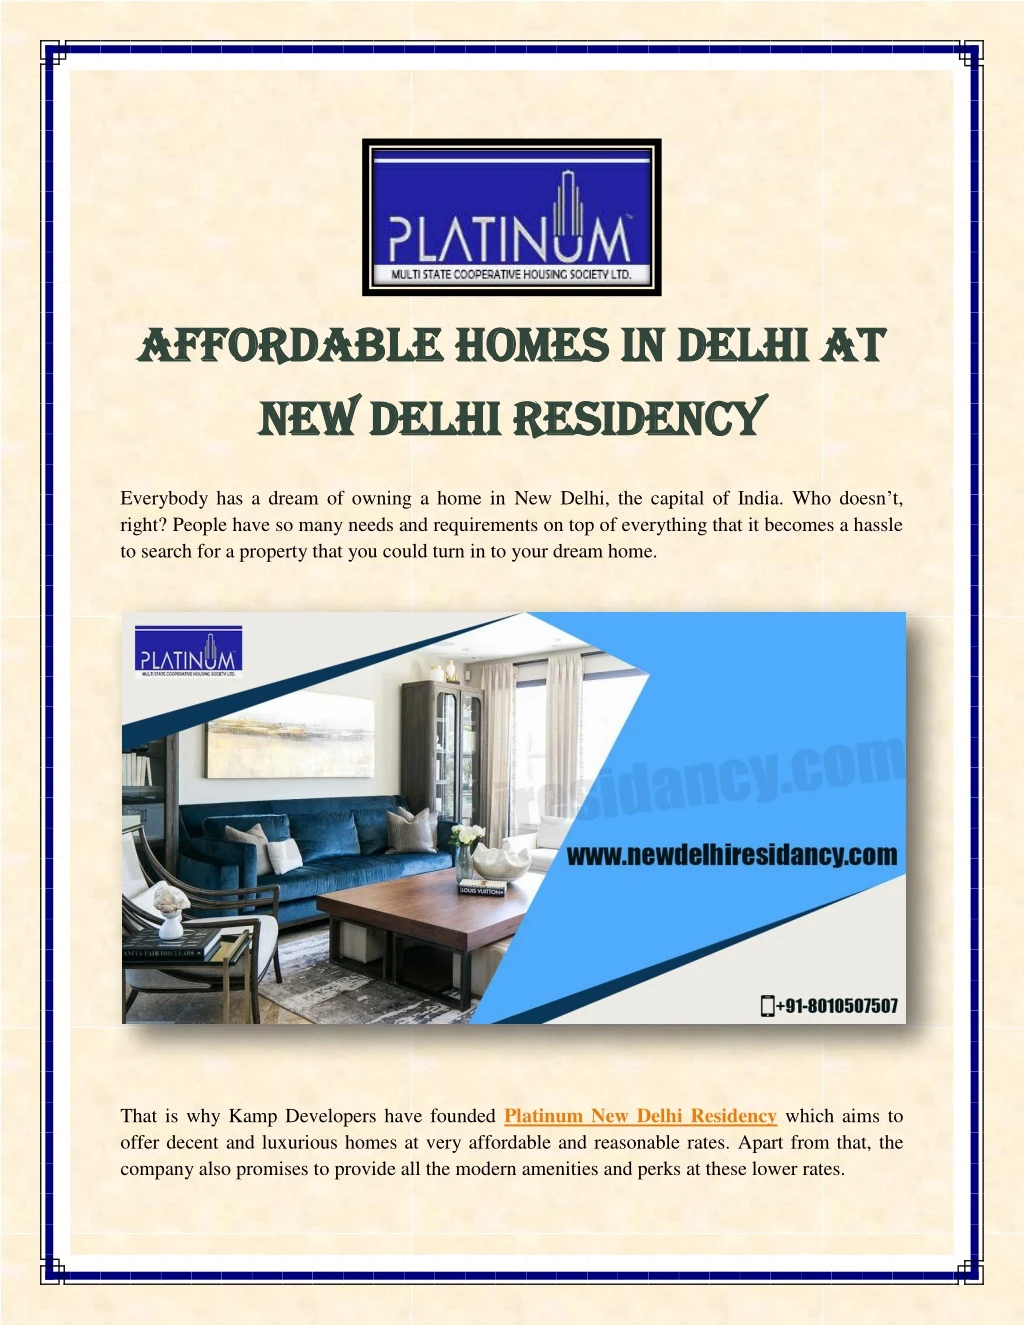 afforda affordable homes in delhi at ble homes